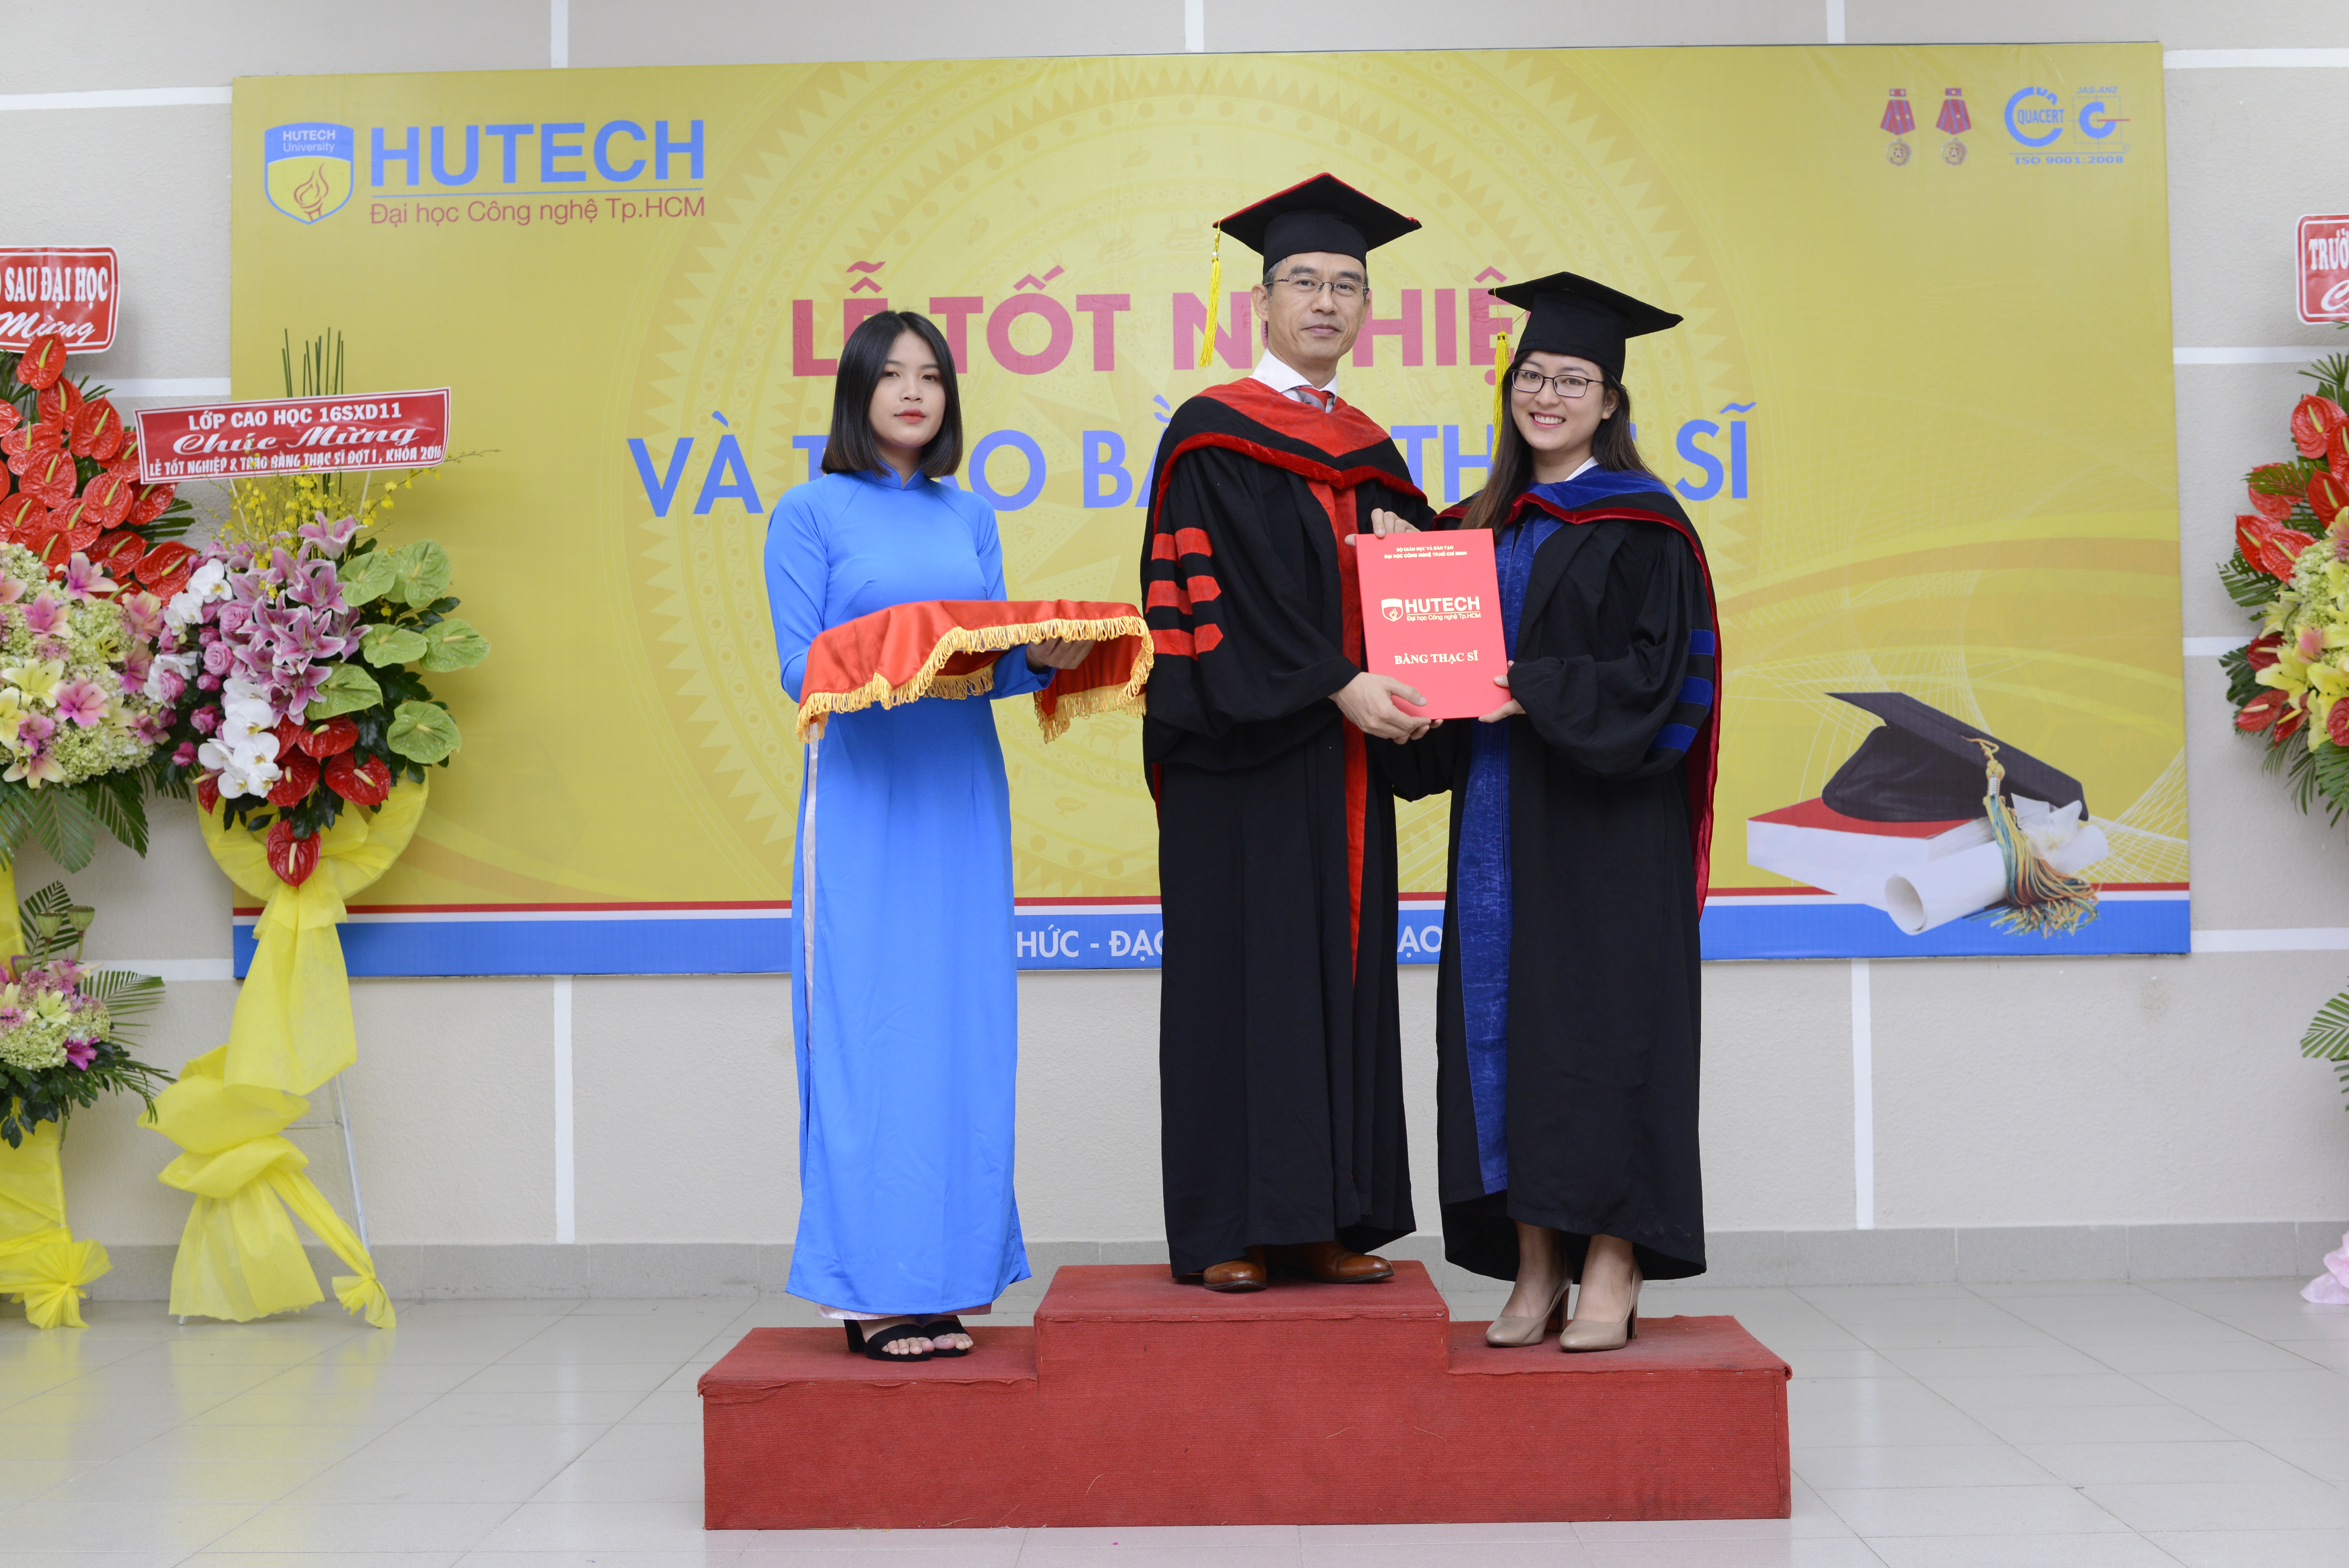 HUTECH thông báo Lễ tốt nghiệp và trao bằng Thạc sĩ Khóa 2016 - Đợt 2 và các Khóa trước (19/01/2019) 13